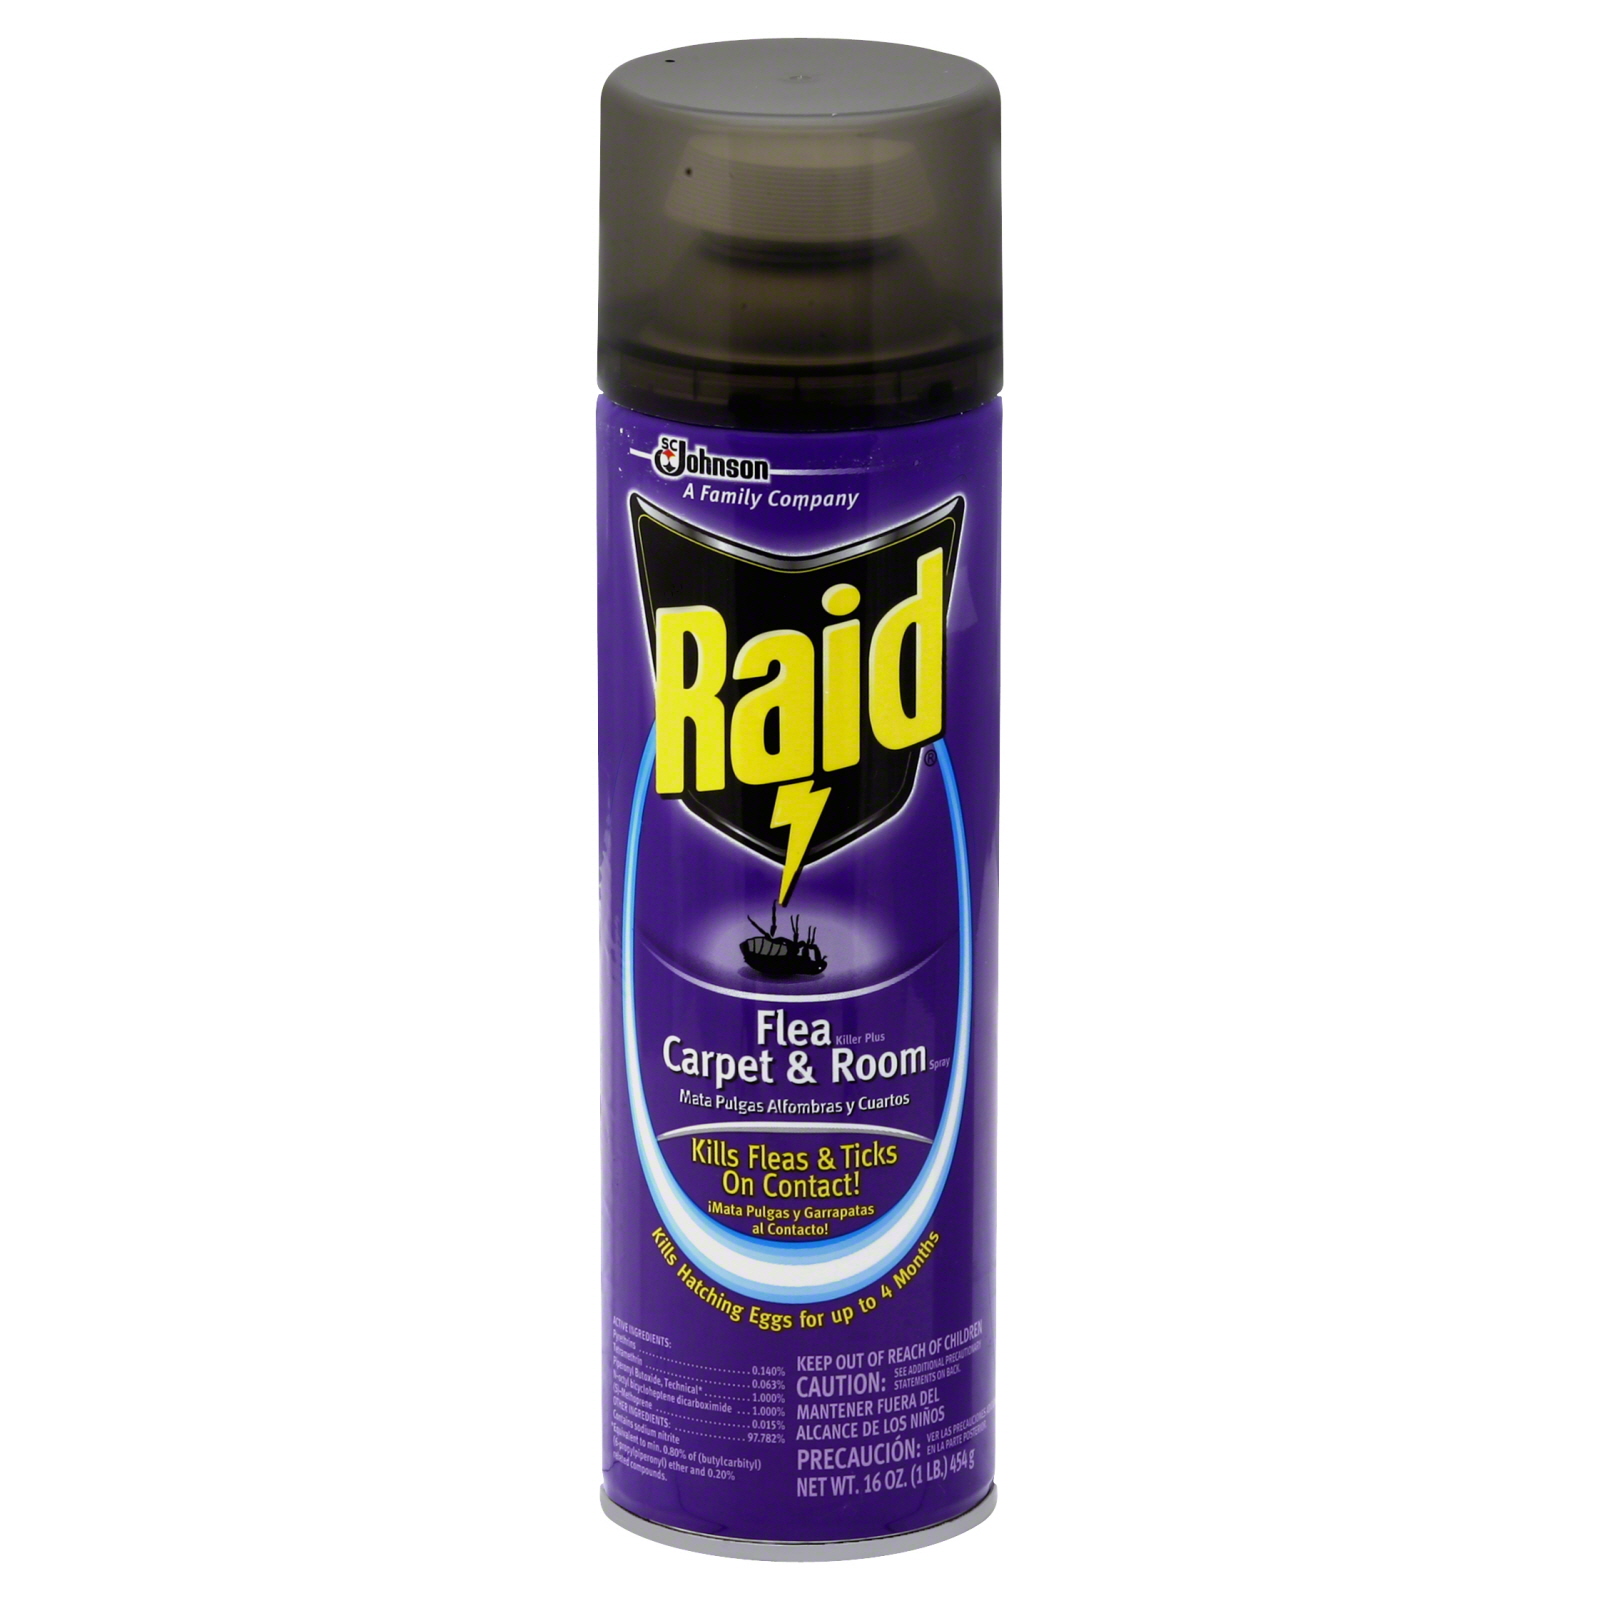 Raid Flea Killer, Plus, Carpet & Room Spray, 16 oz (1 lb) 454 g